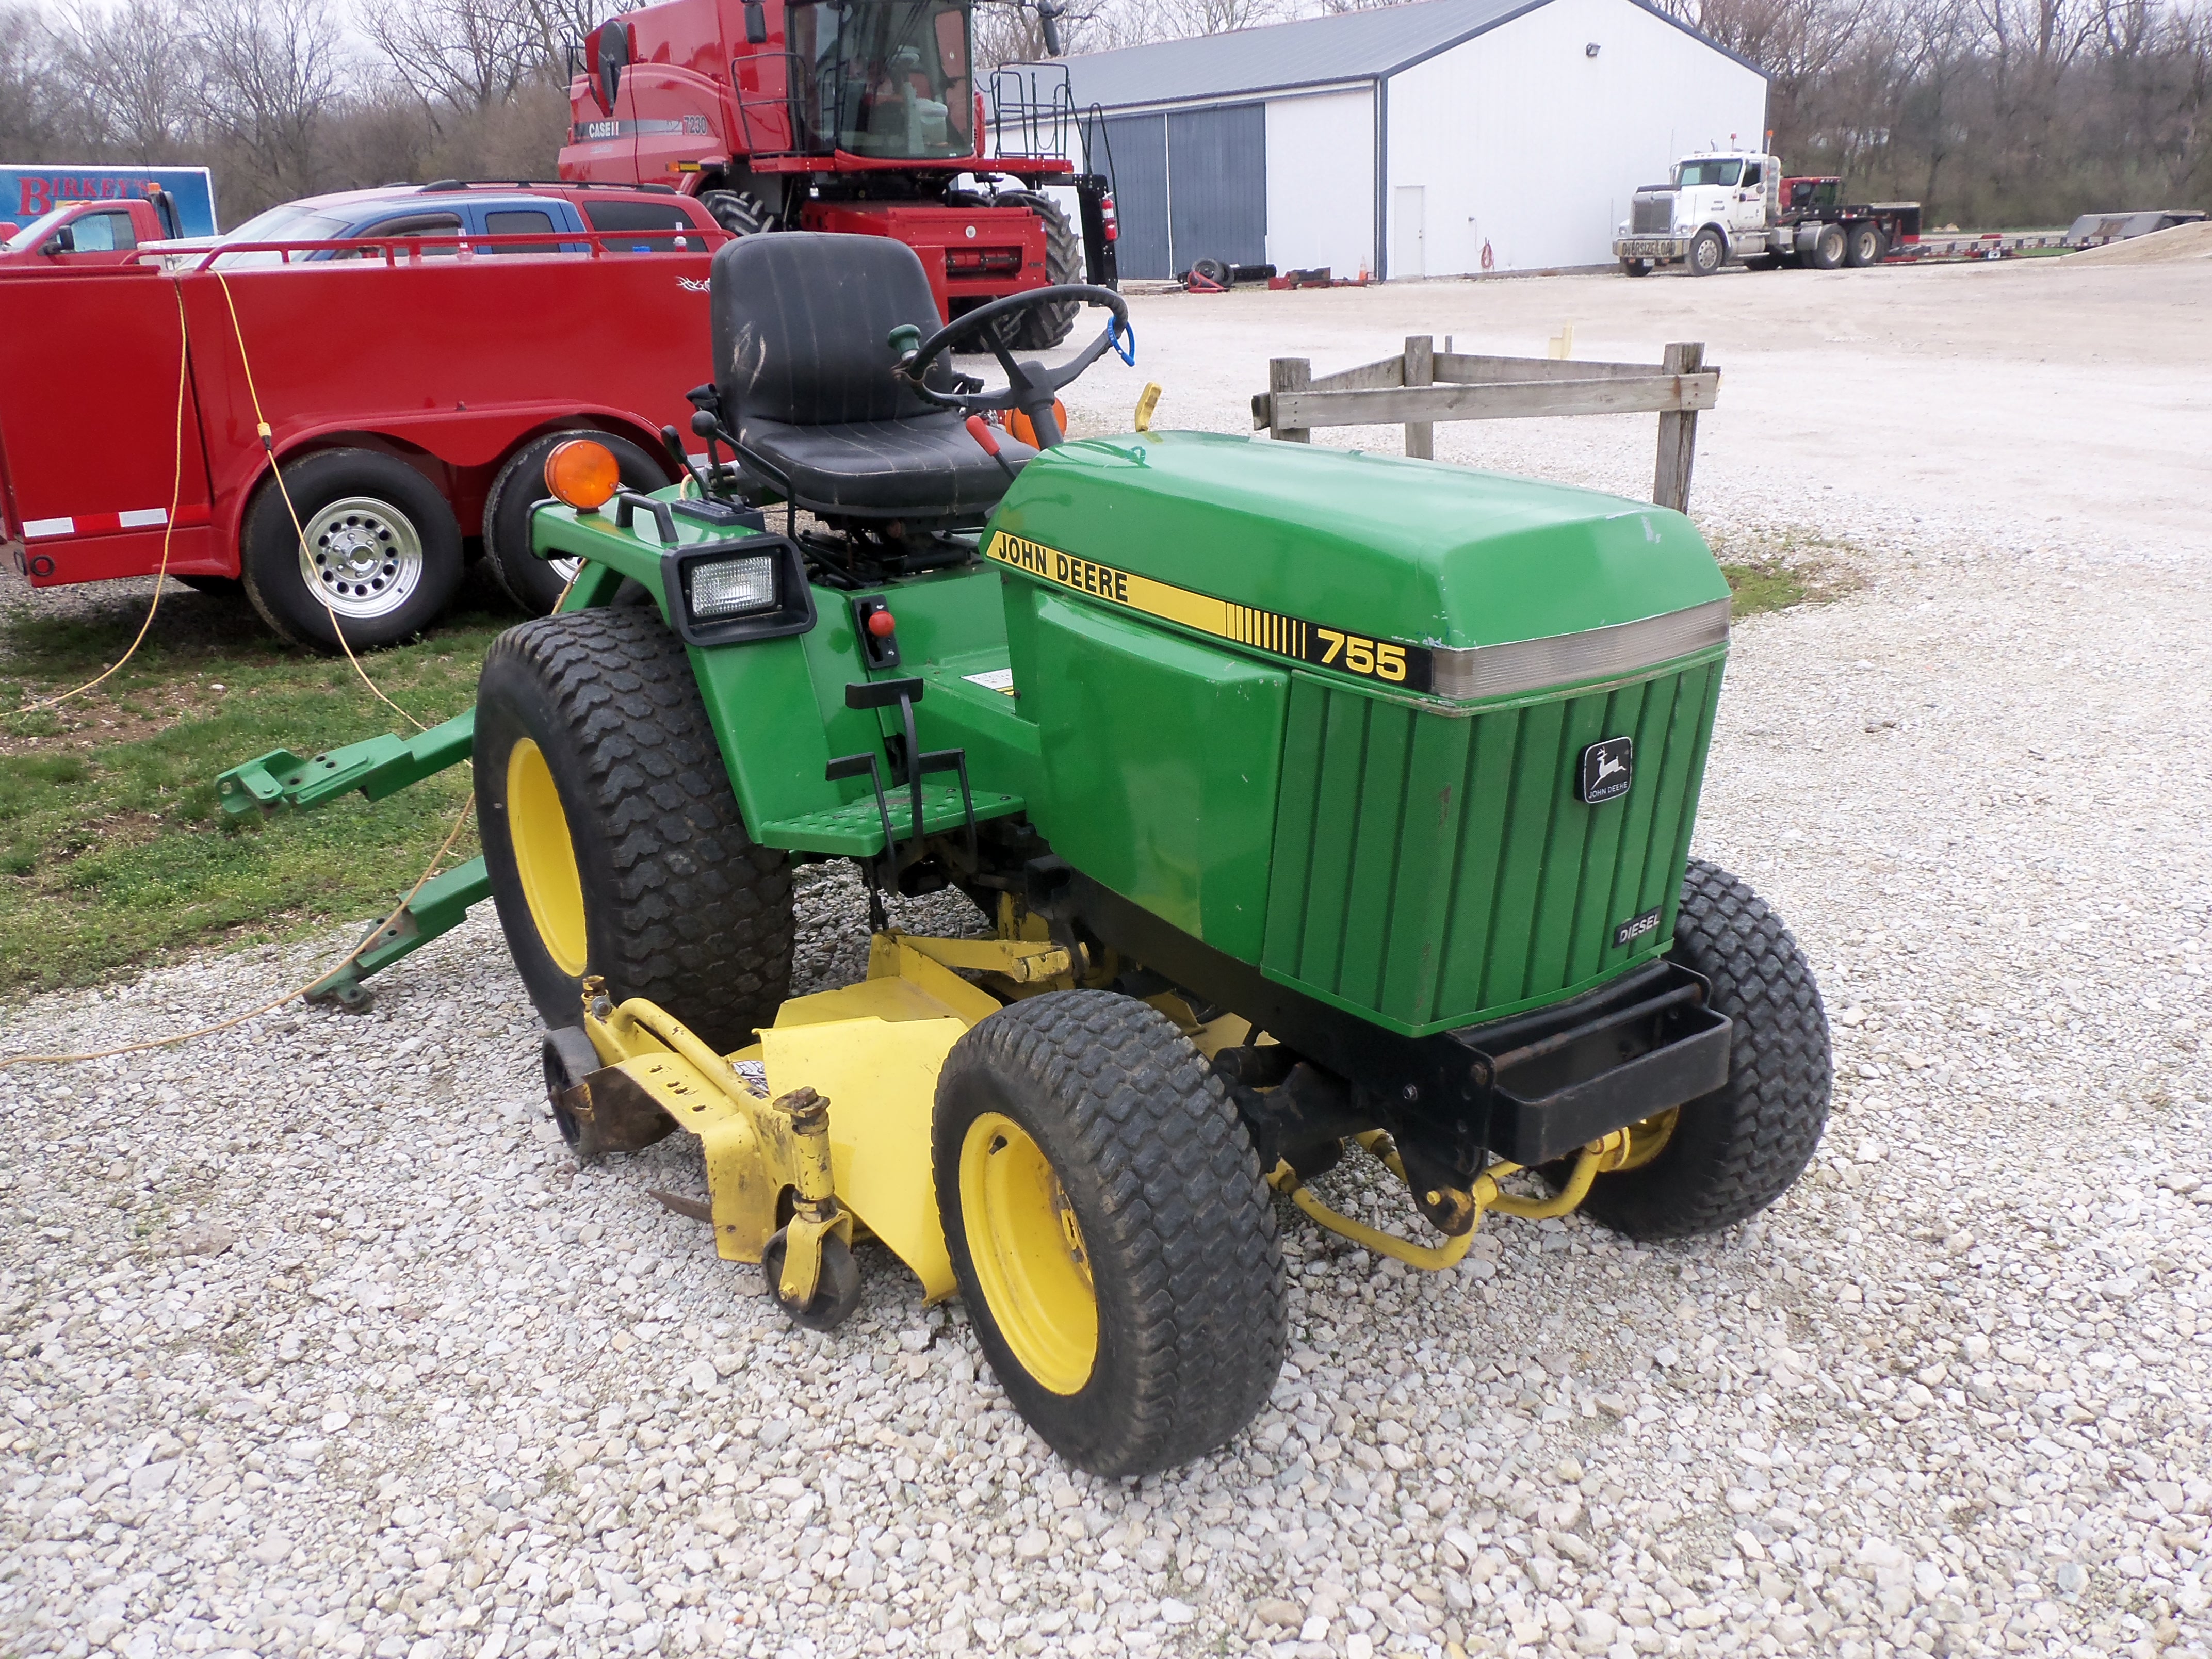 John Deere 755 compact utility tractor | John Deere equipment | Pint ...